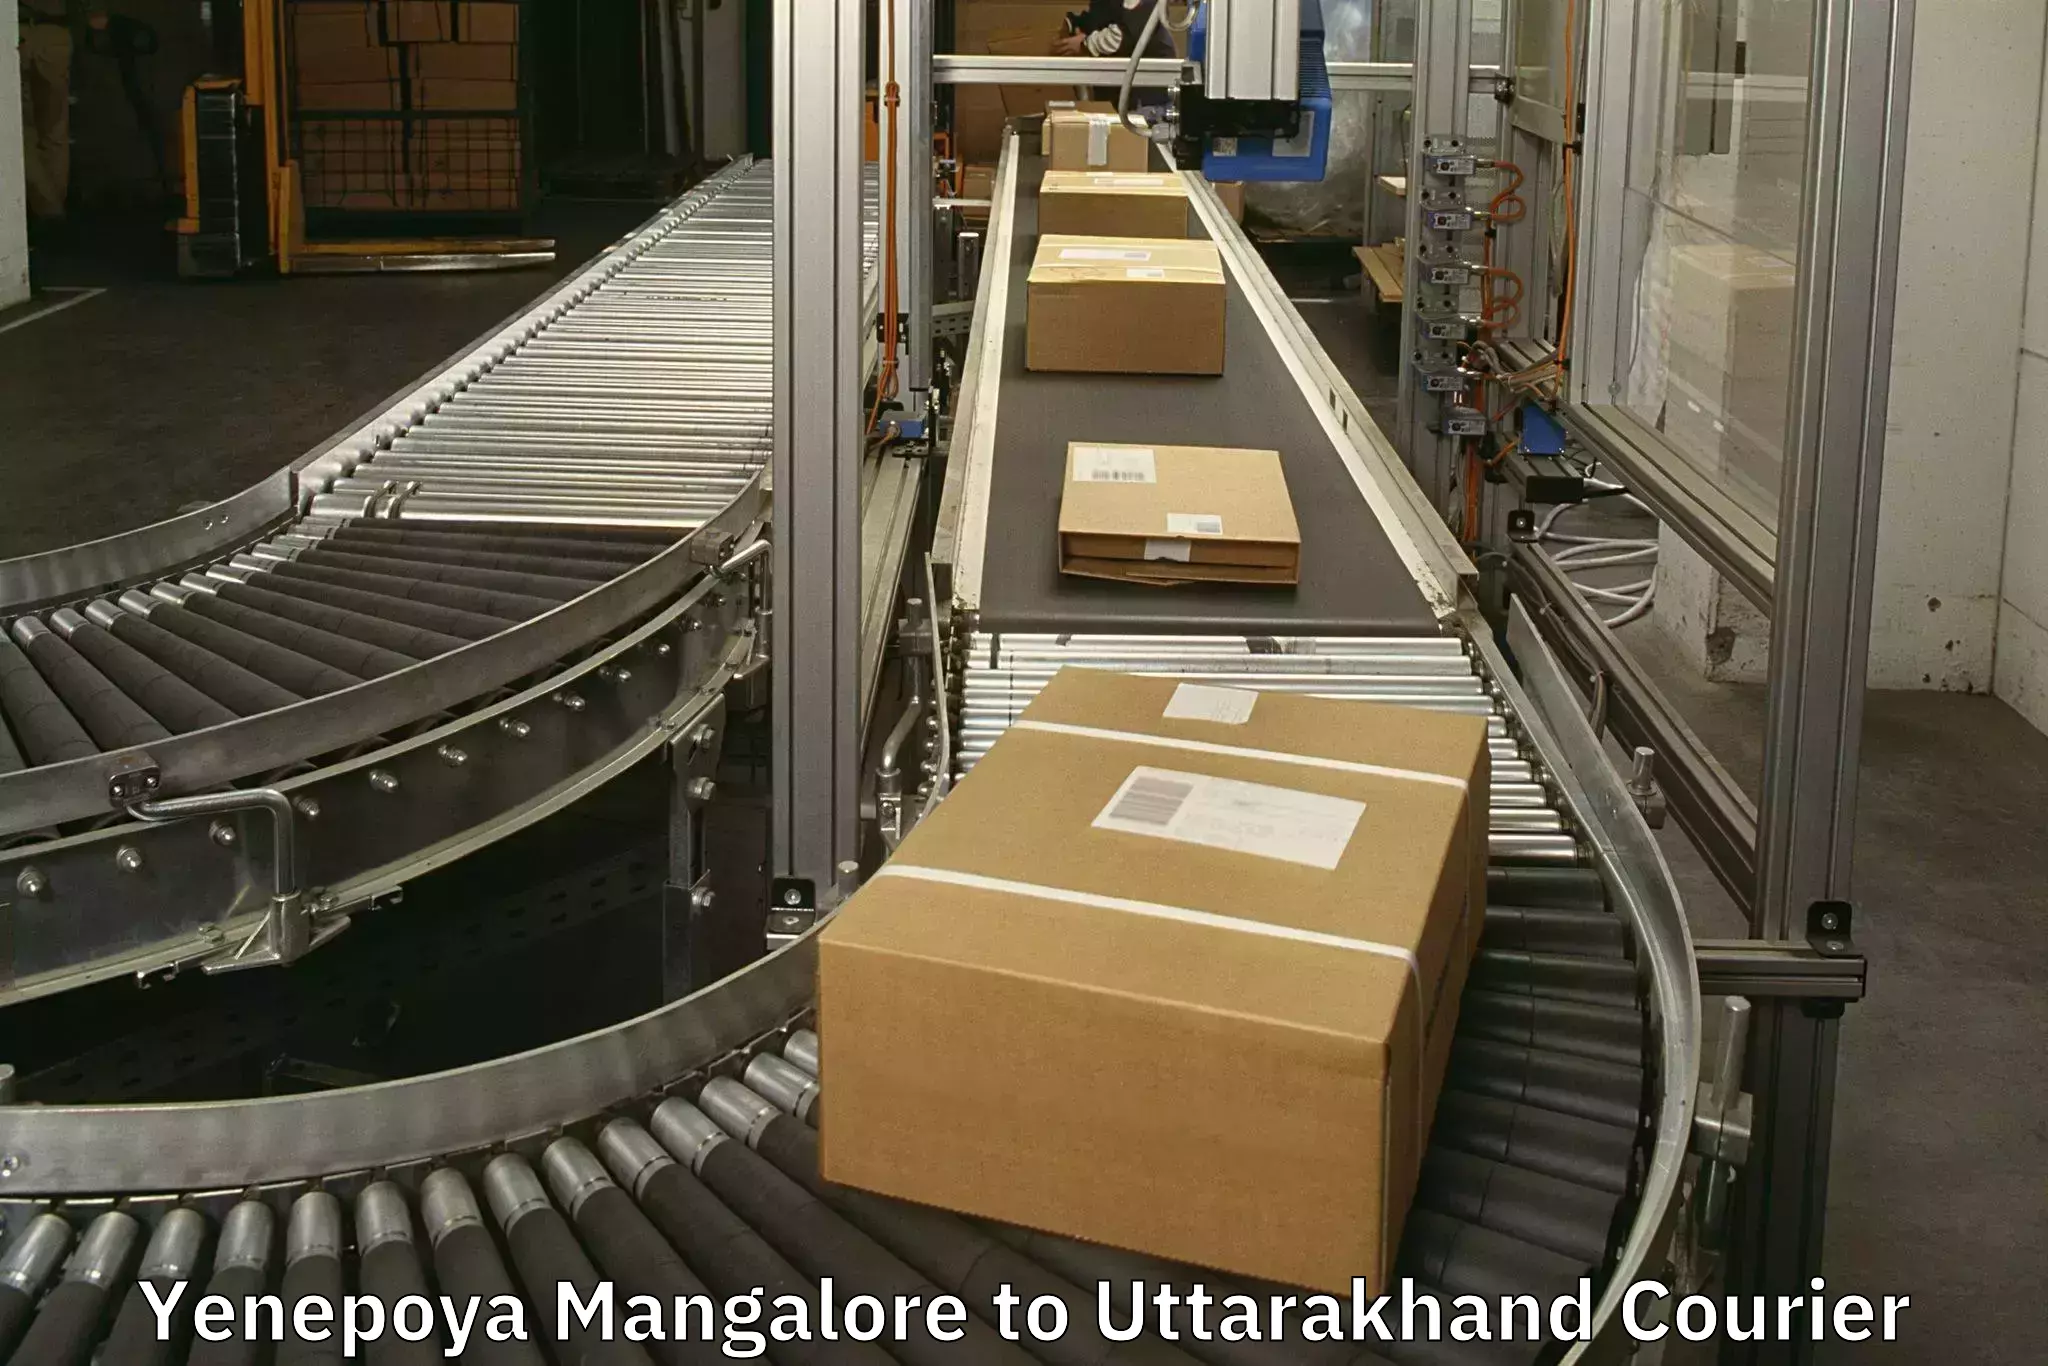 Luggage delivery providers Yenepoya Mangalore to IIT Roorkee